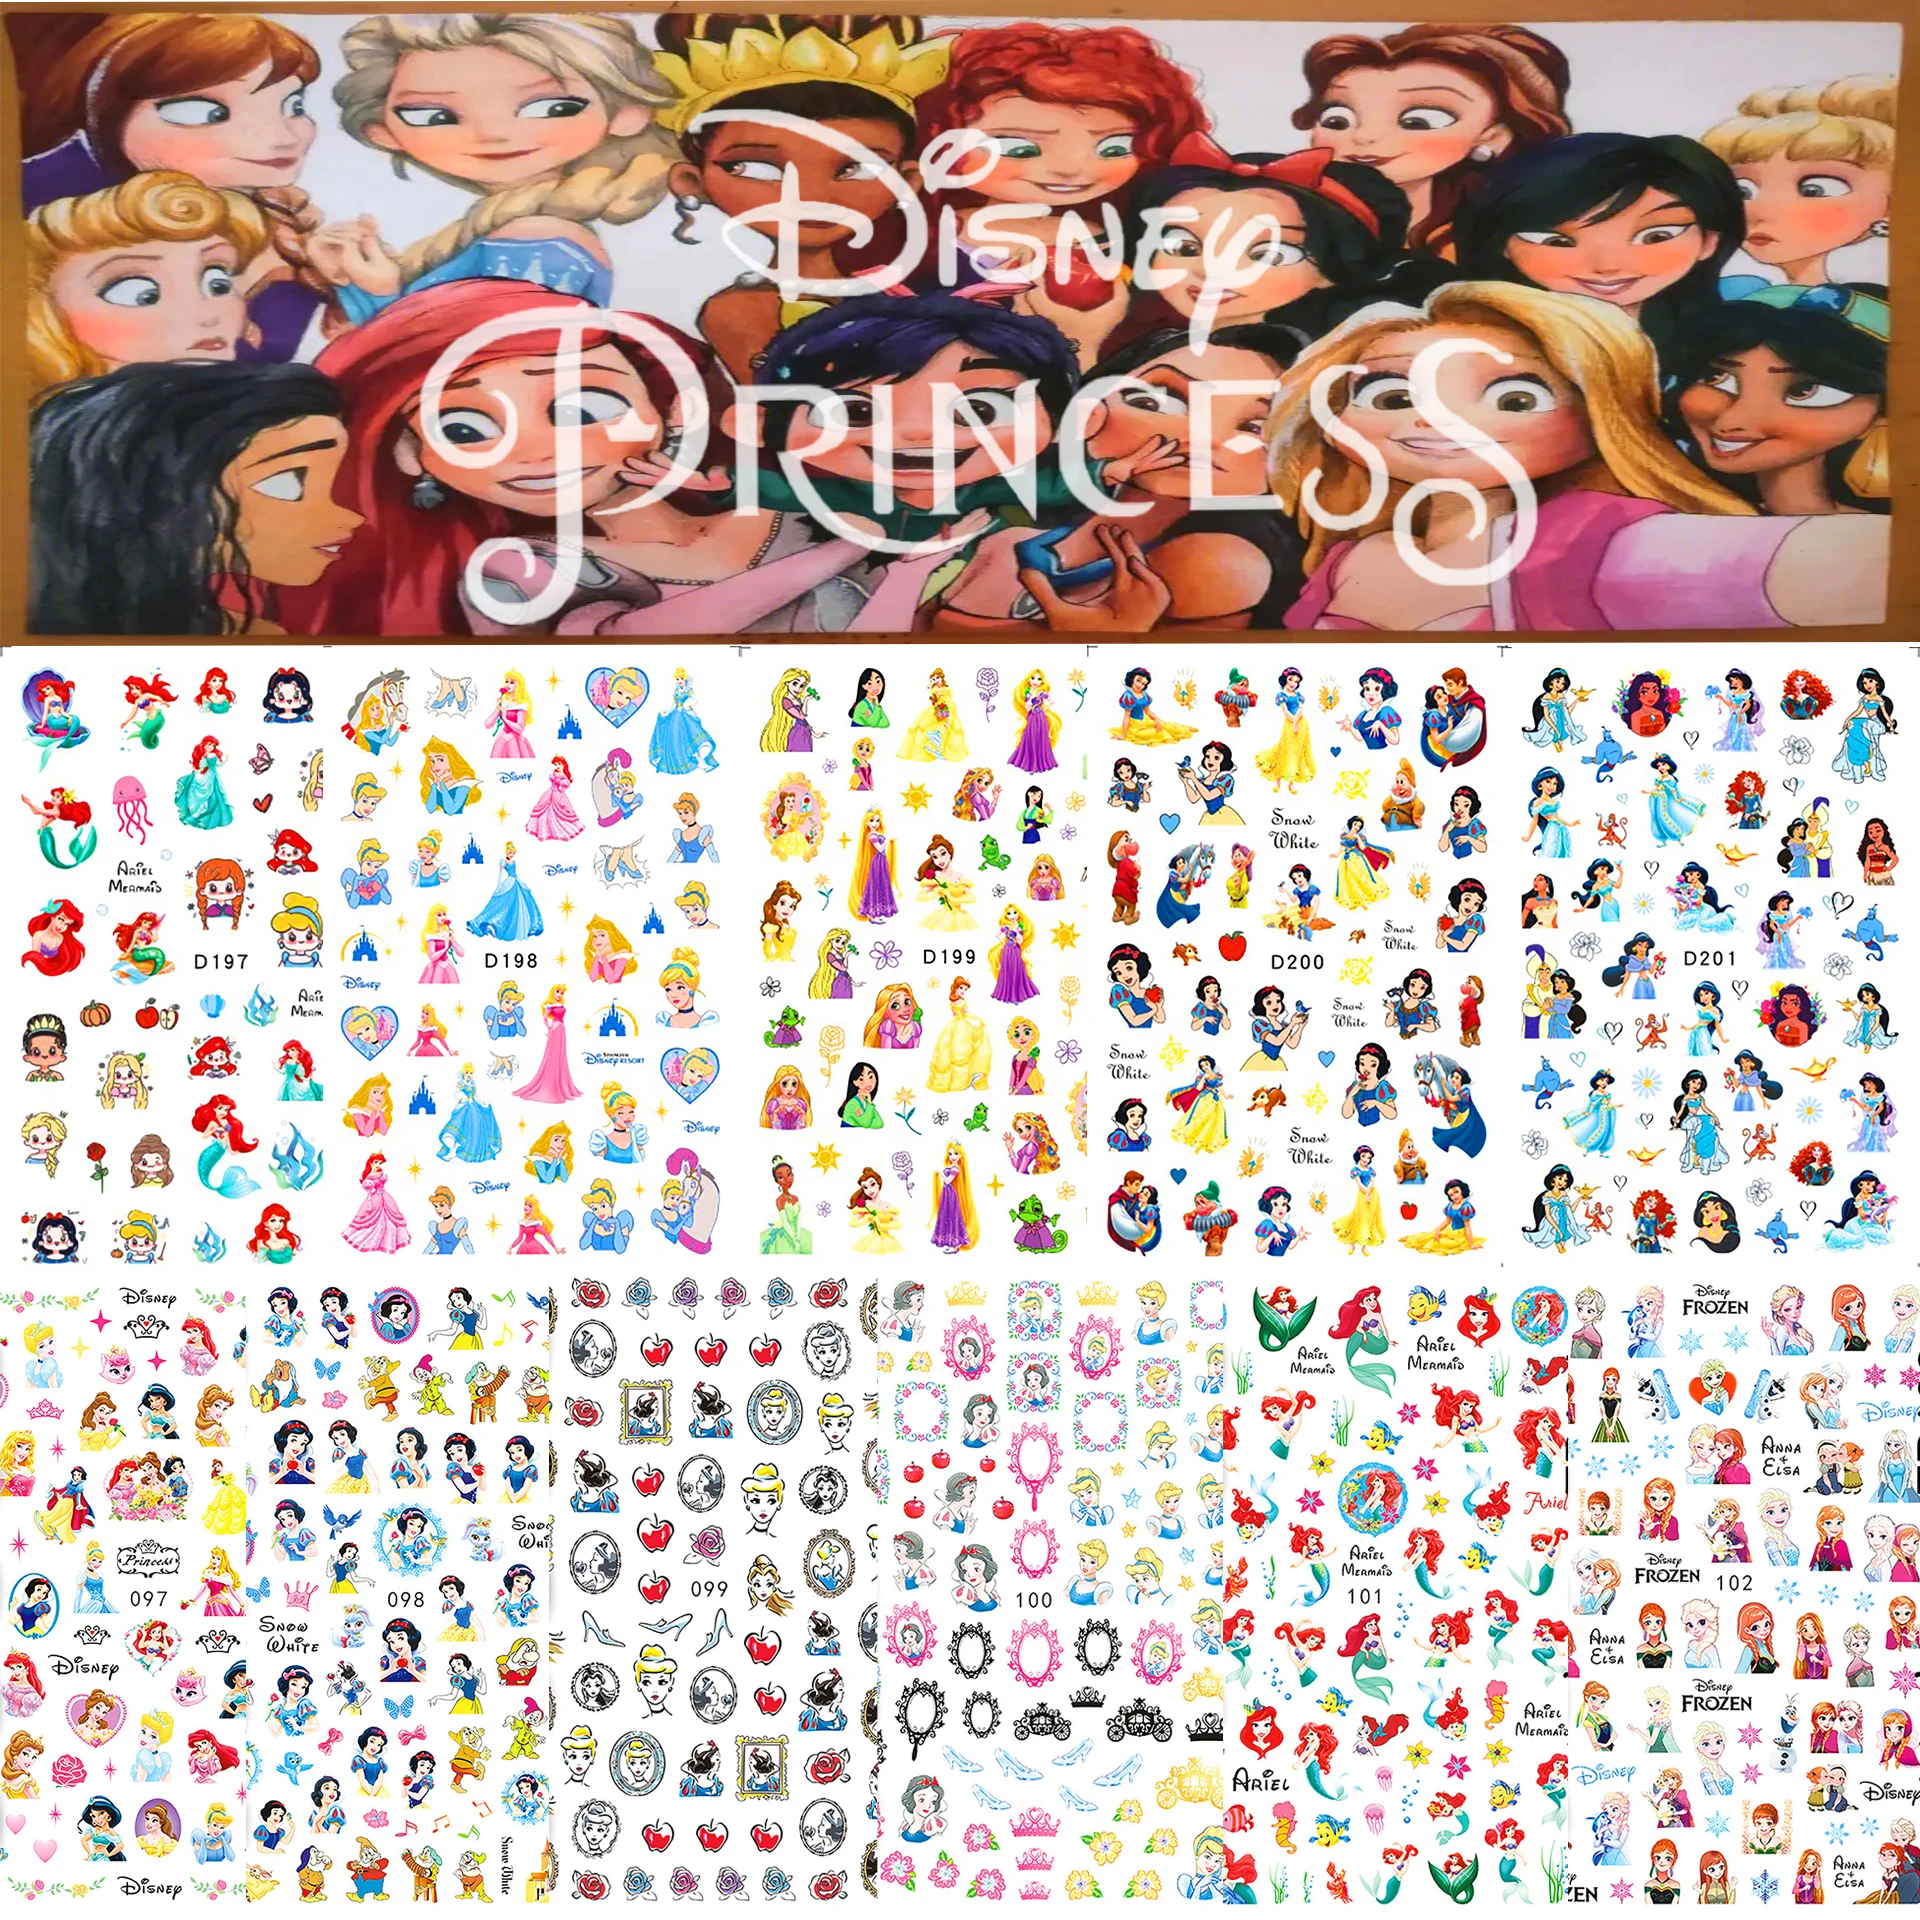 

1 шт., 3D наклейки для ногтей с героями мультфильмов «Принцесса Диснея», детали для ногтей, принадлежности для дизайна ногтей Disney, милые наклейки с Микки Дональдом Даком, Лило и Стич